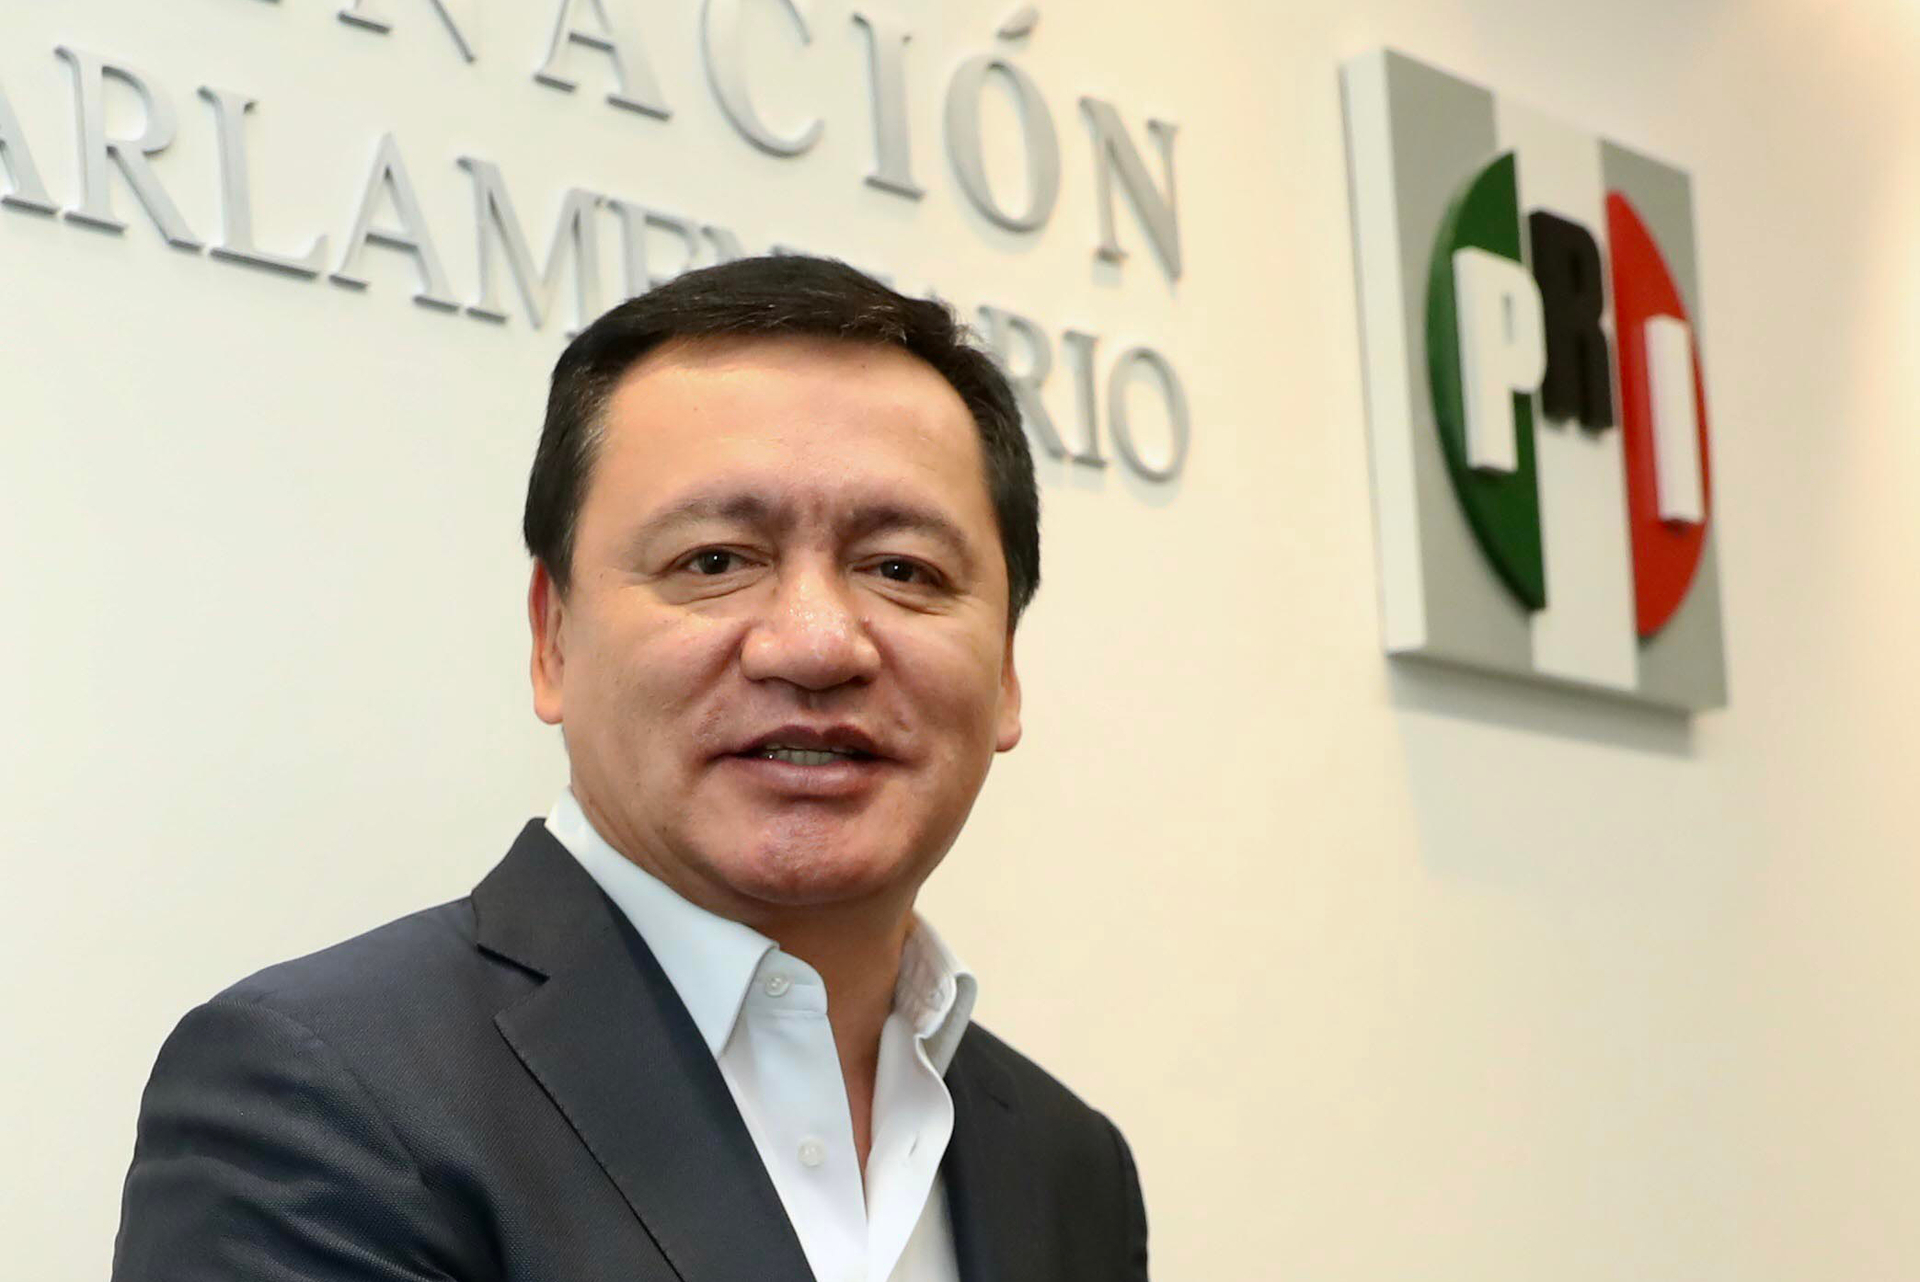 Osorio Chong y Ruiz Massieu impugnan sesión del CPN contra prorroga para 'Alito'